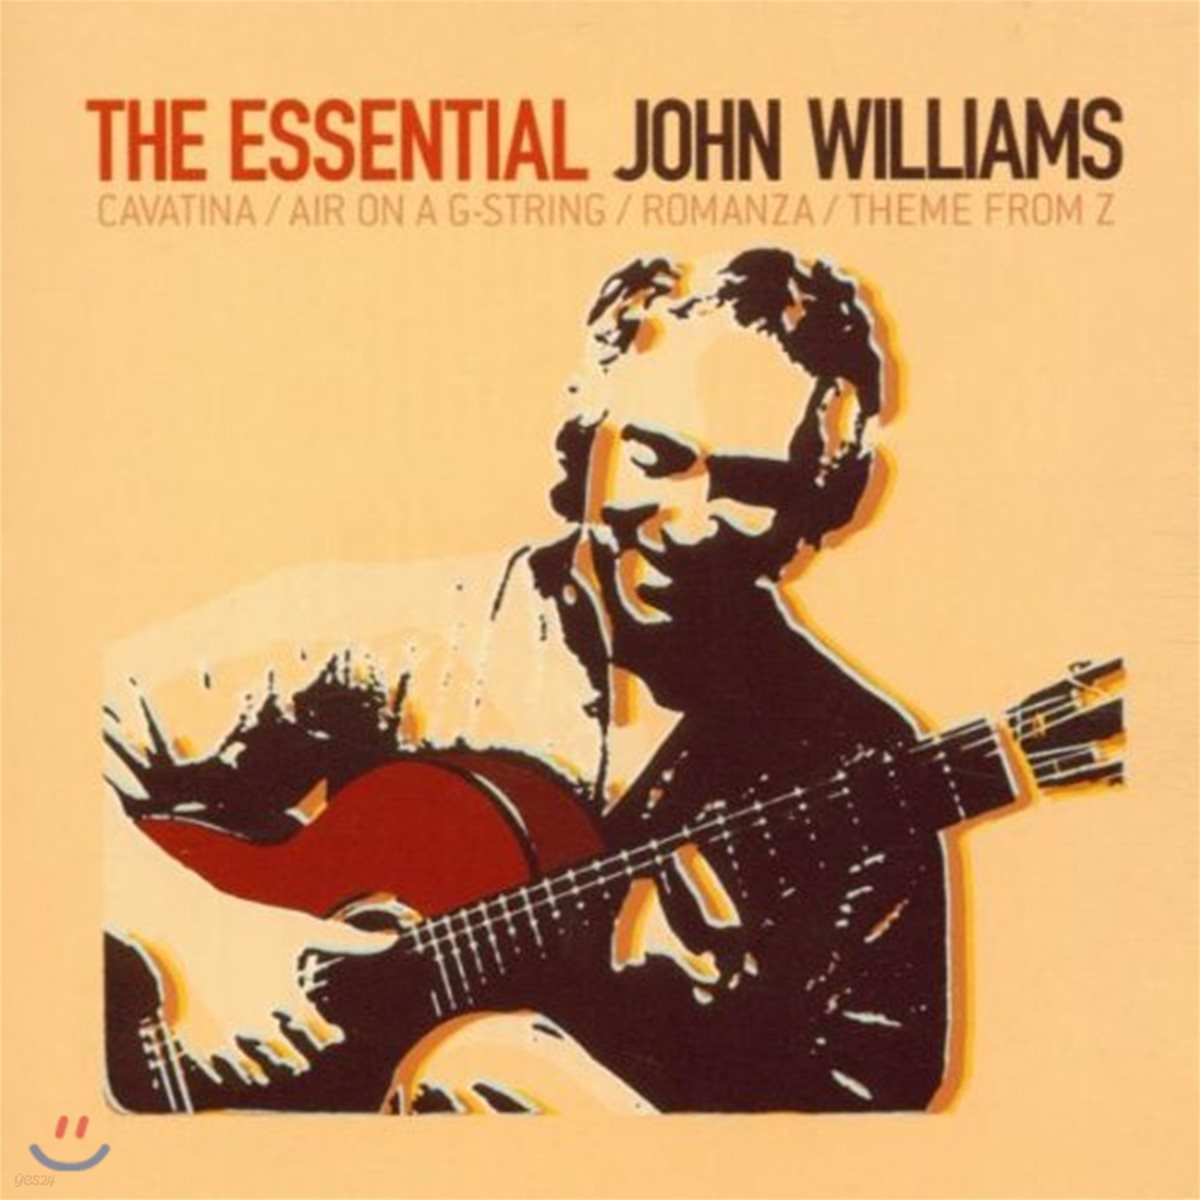 John Williams - The Essential 